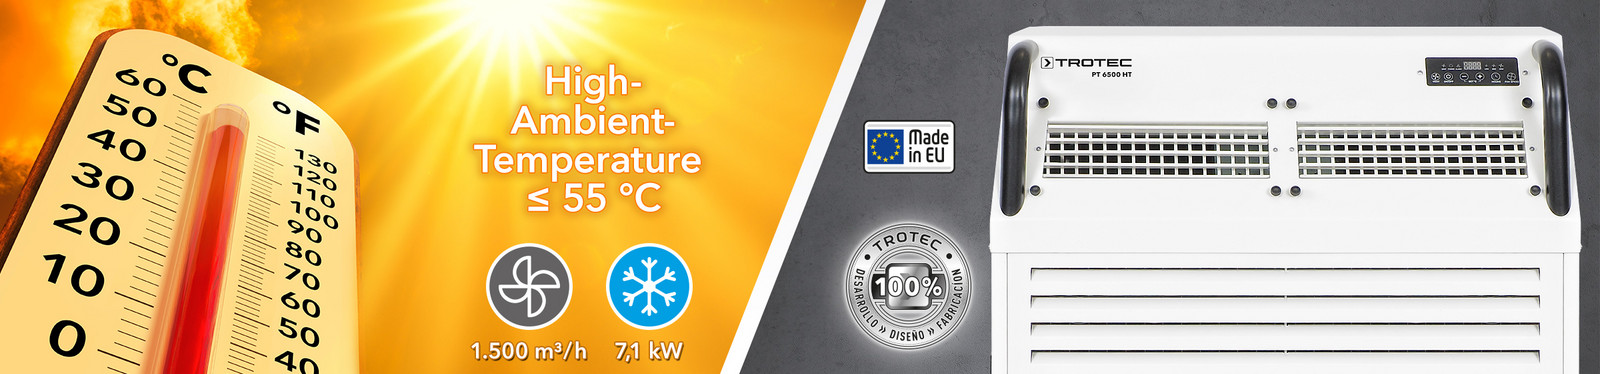 Calidad probada de Trotec: El aire acondicionado industrial PT 6500 HT para temperaturas ambientales de hasta +55 °C